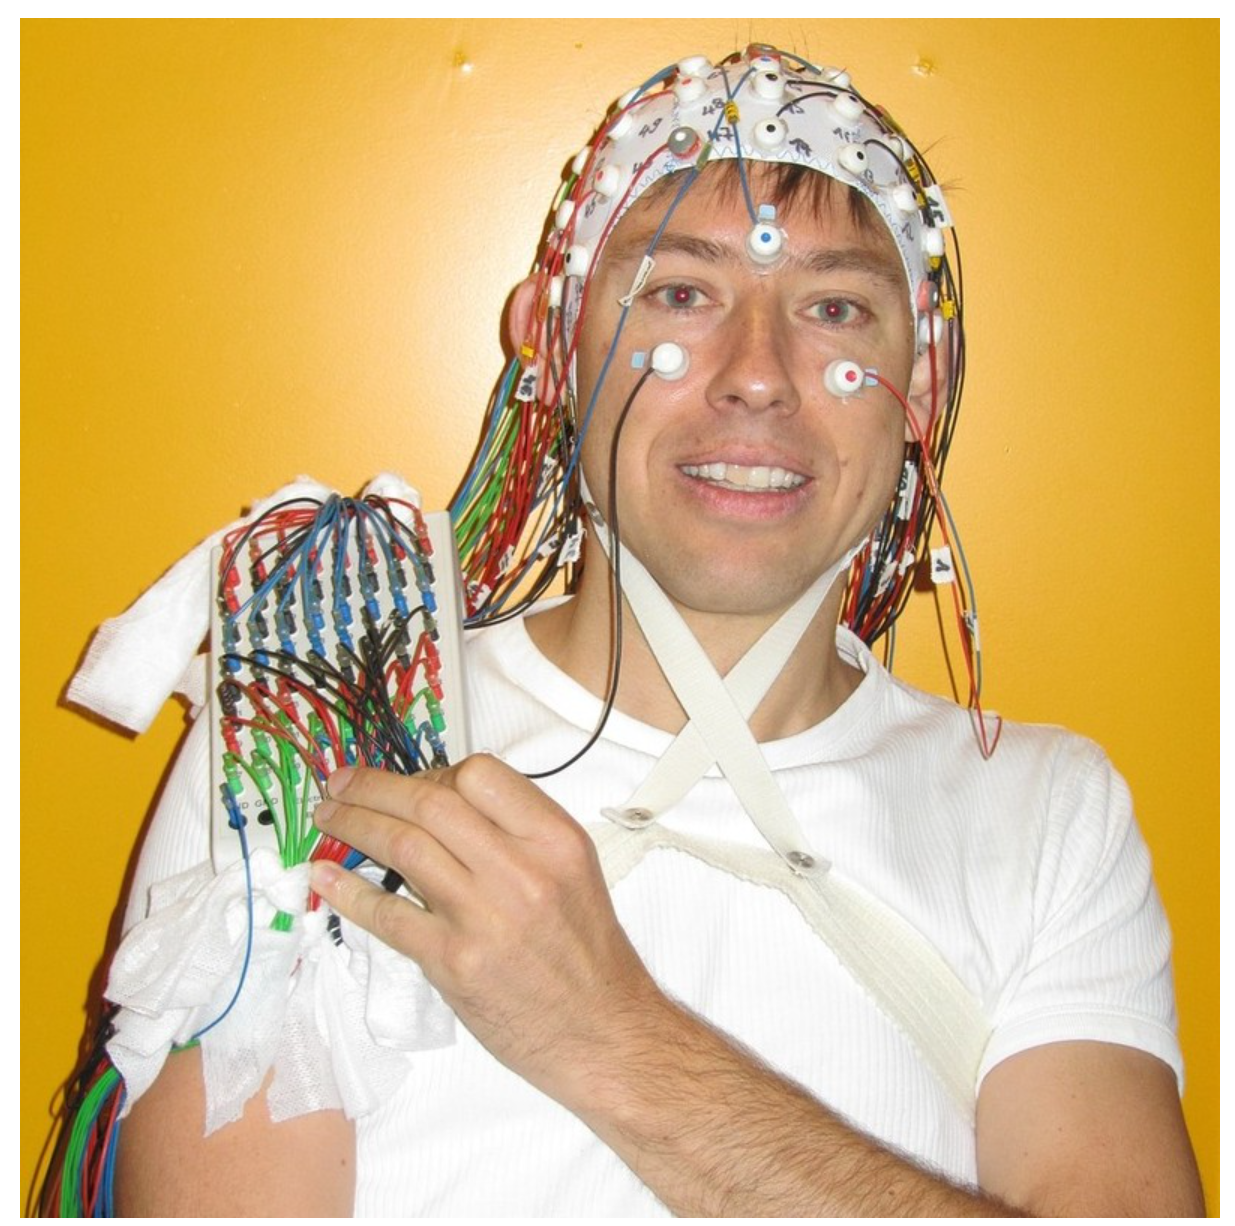 Foto de un joven con gorra EEG con abundantes cables que fluyen de la gorra que cubre gran parte de la parte superior de su cuerpo.